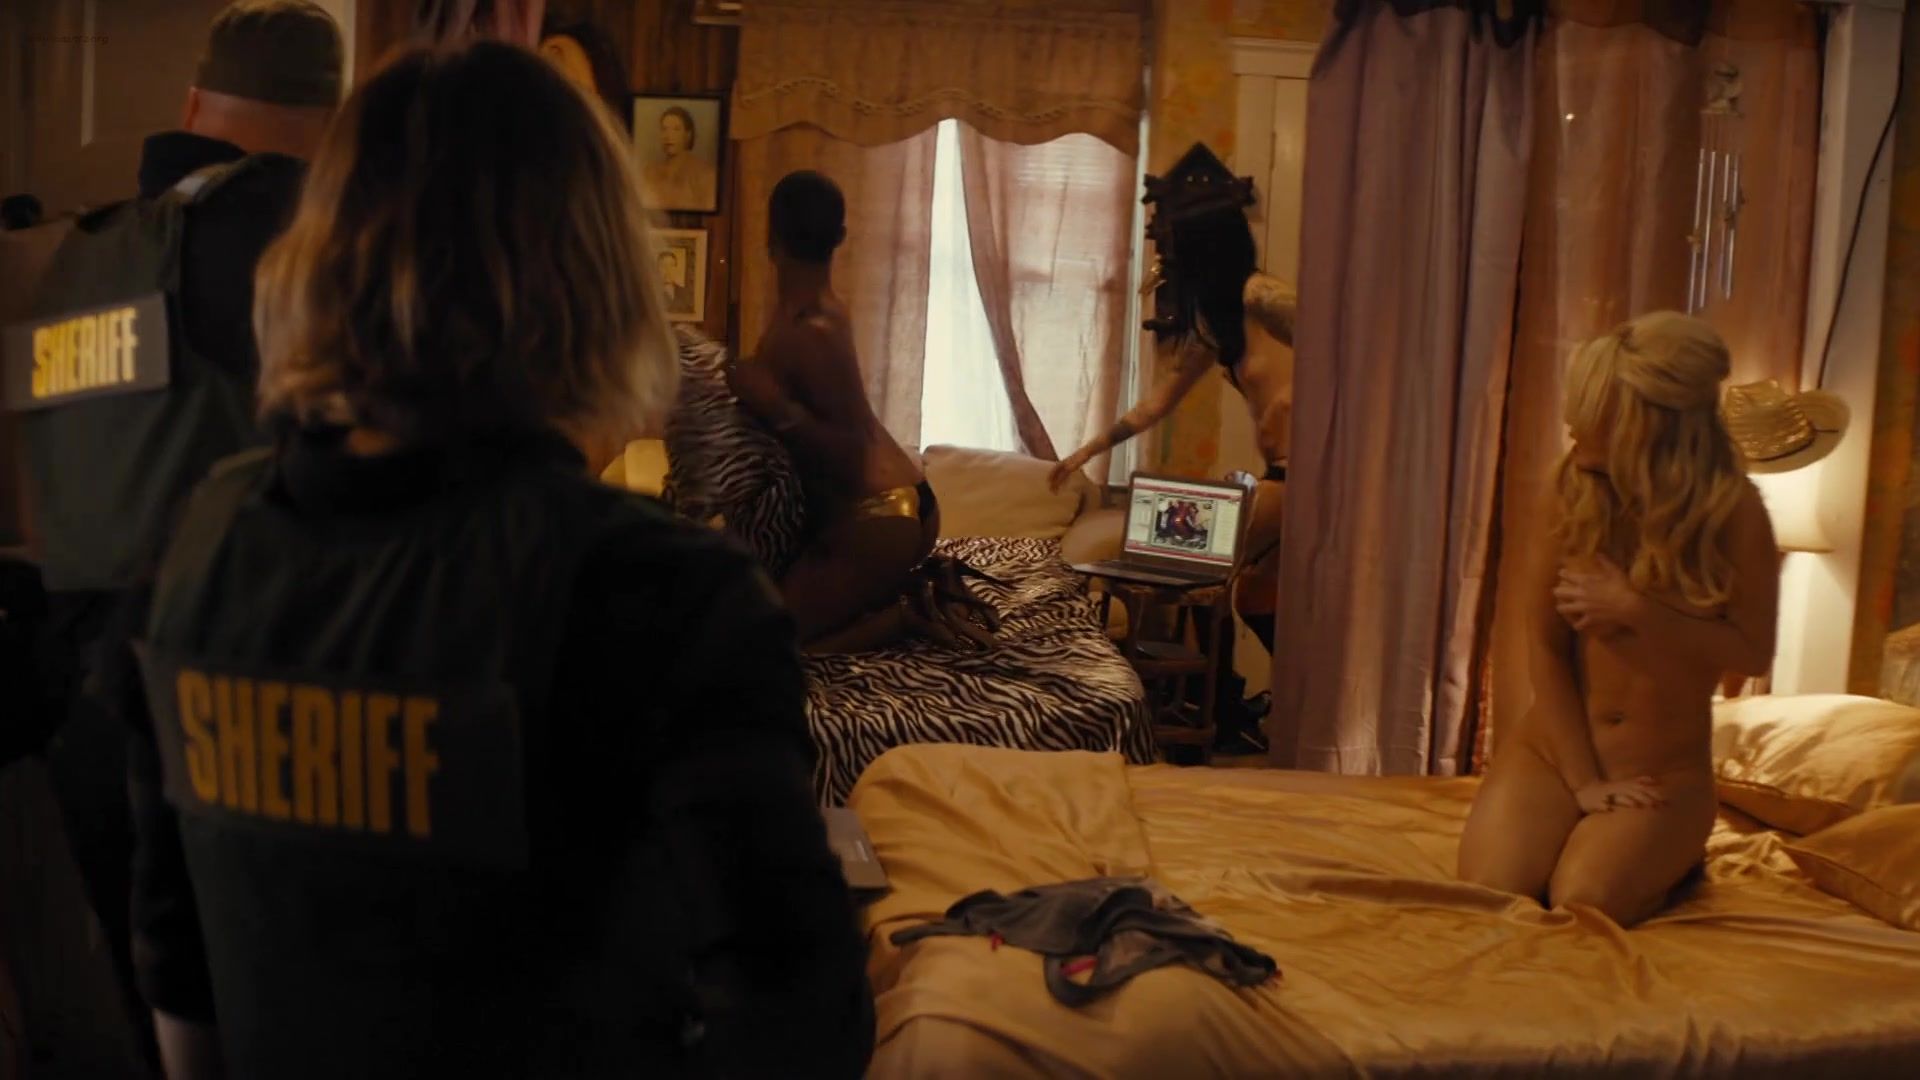 Russia Sex video Adria Arjona, Rachel Mcadams - True Detective (2015) s2e1 Butt